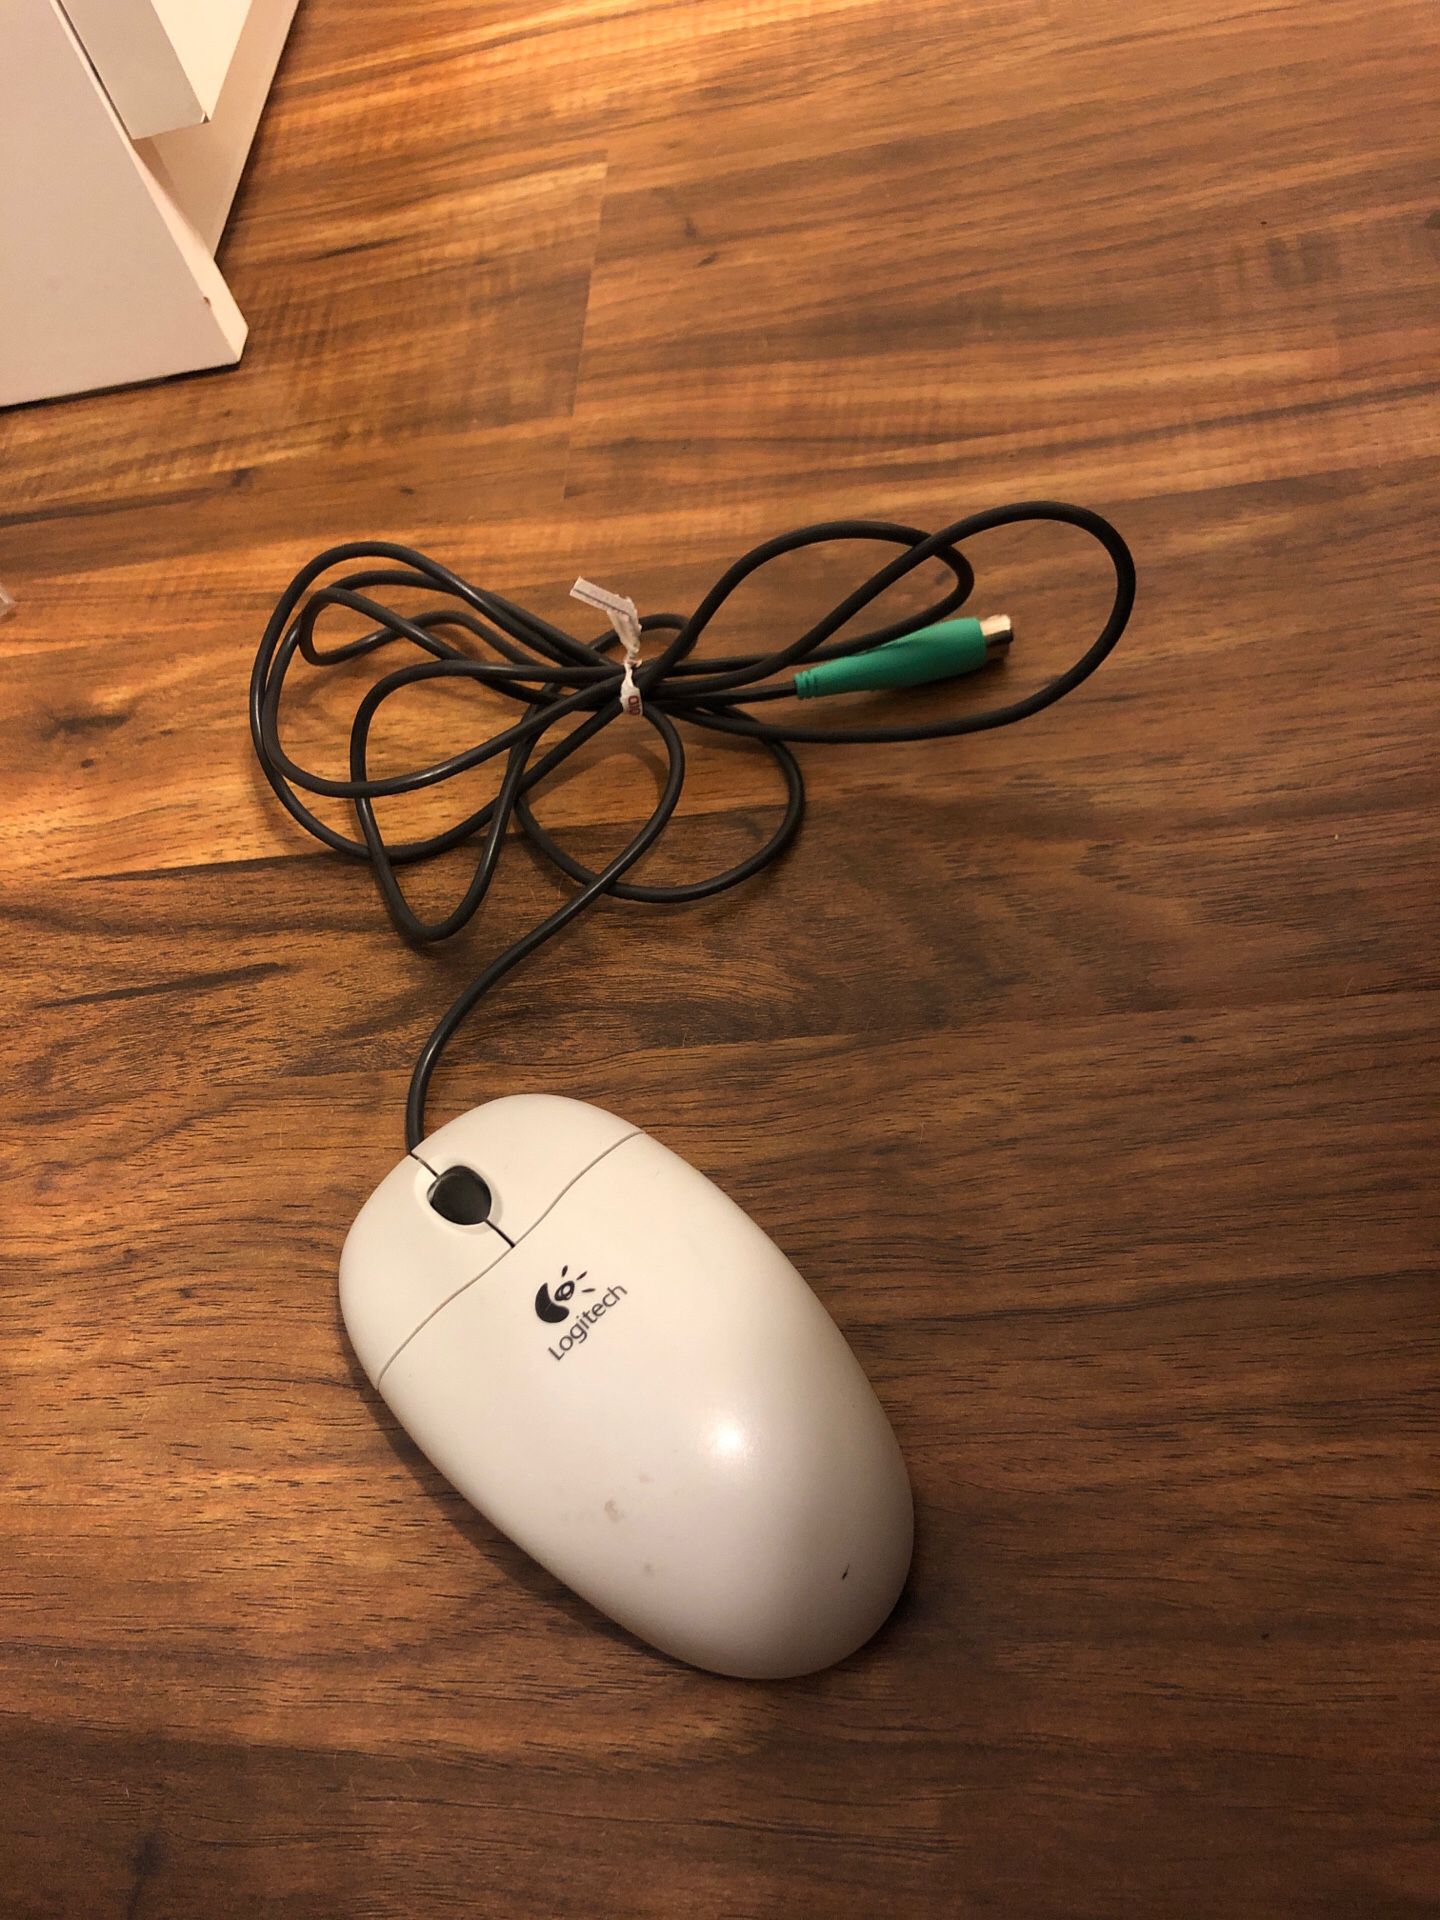 Logitech computer mouse